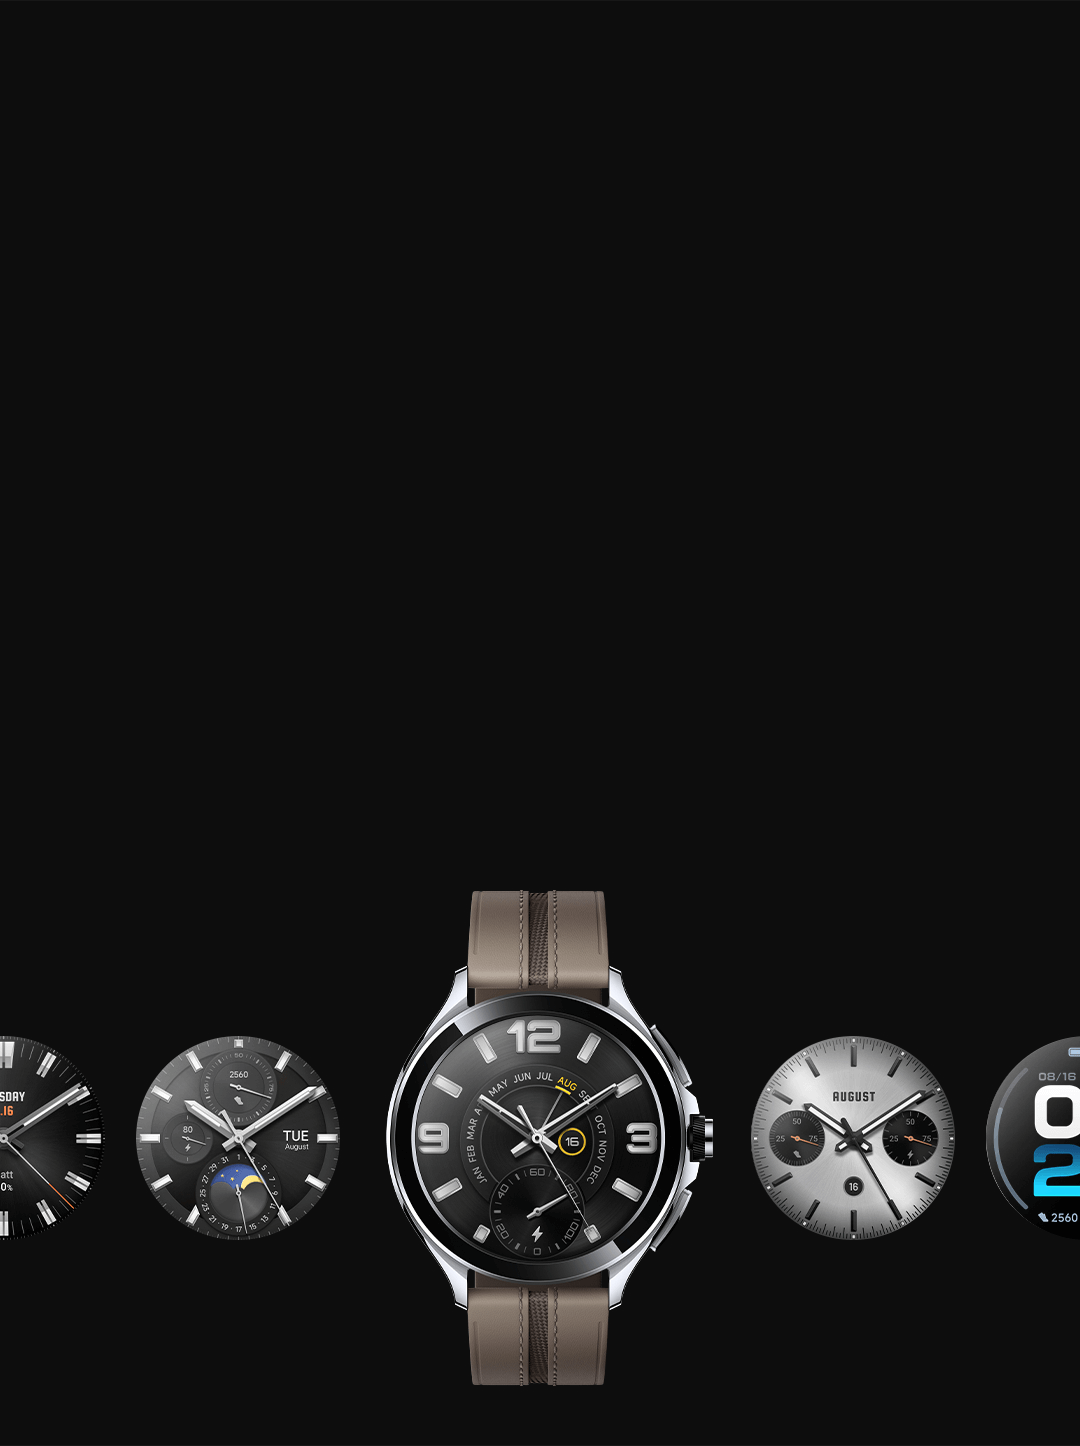 Smartwatch xiaomi watch 2 pro lte 46mm - черный / черный спорт band черный  недорого ➤➤➤ Интернет магазин DARSTAR